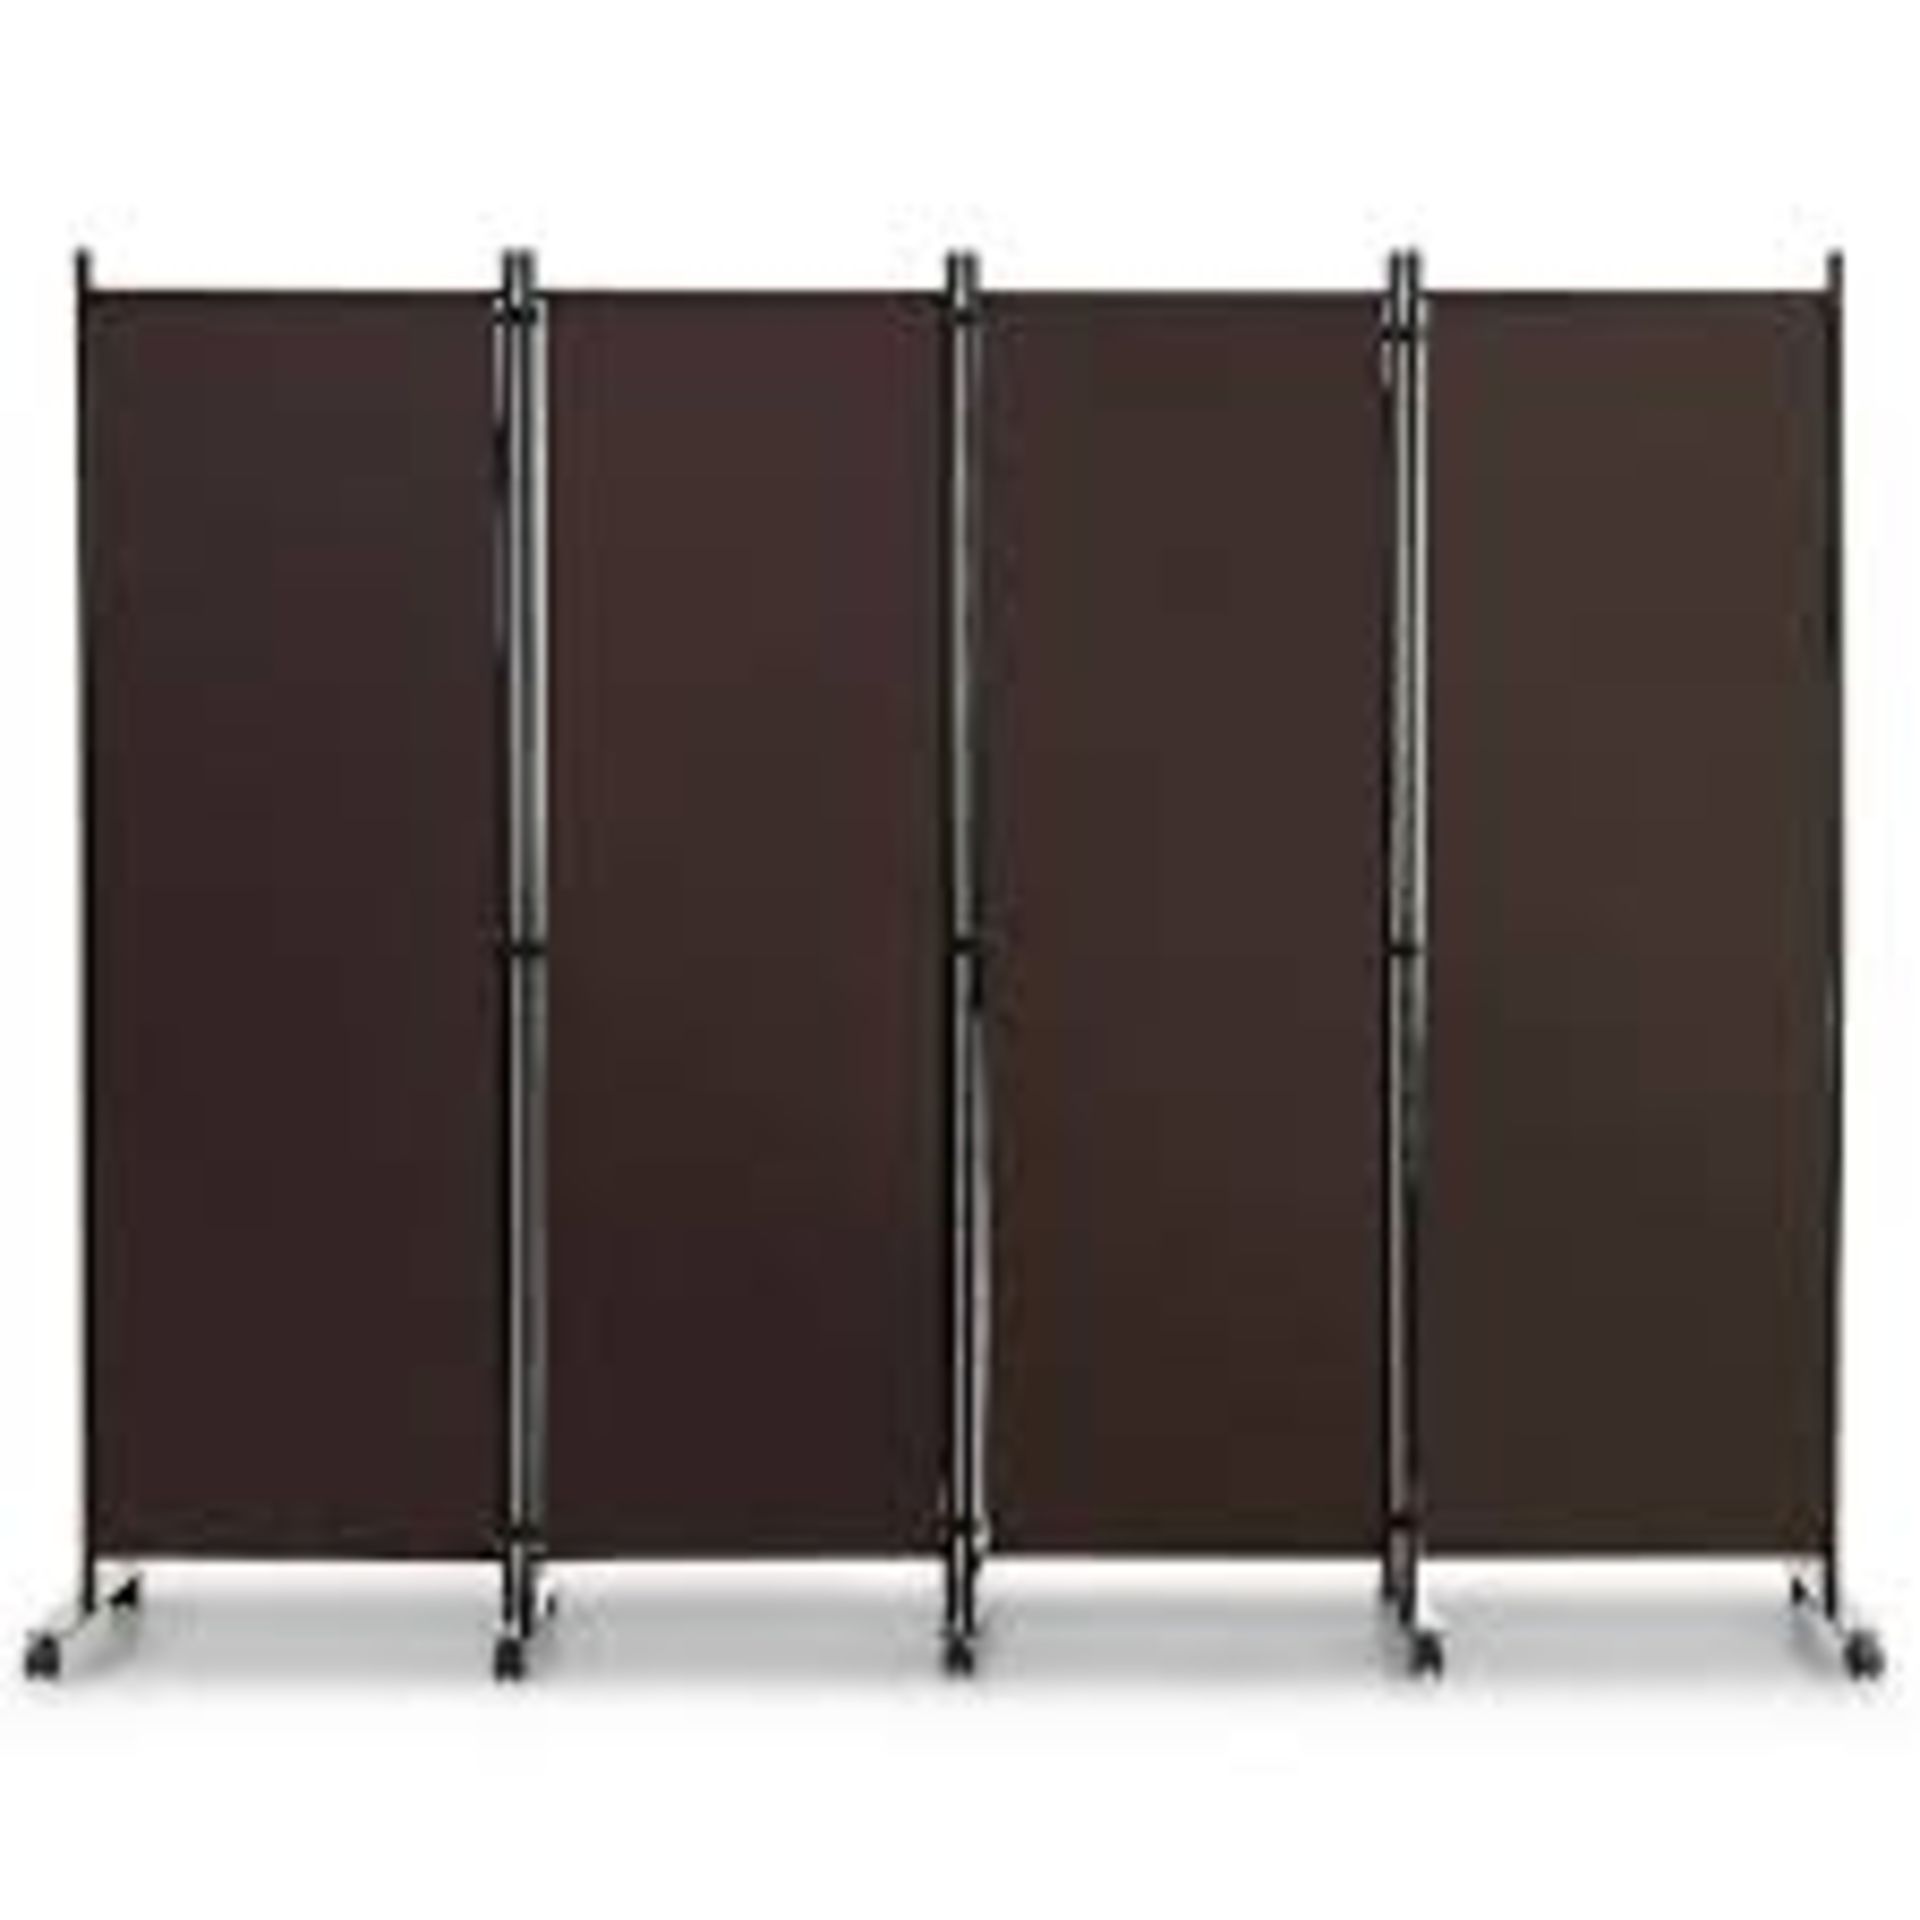 4-Panel Folding Room Divider with Wheels for Living Room Bedroom -Brown - ER53